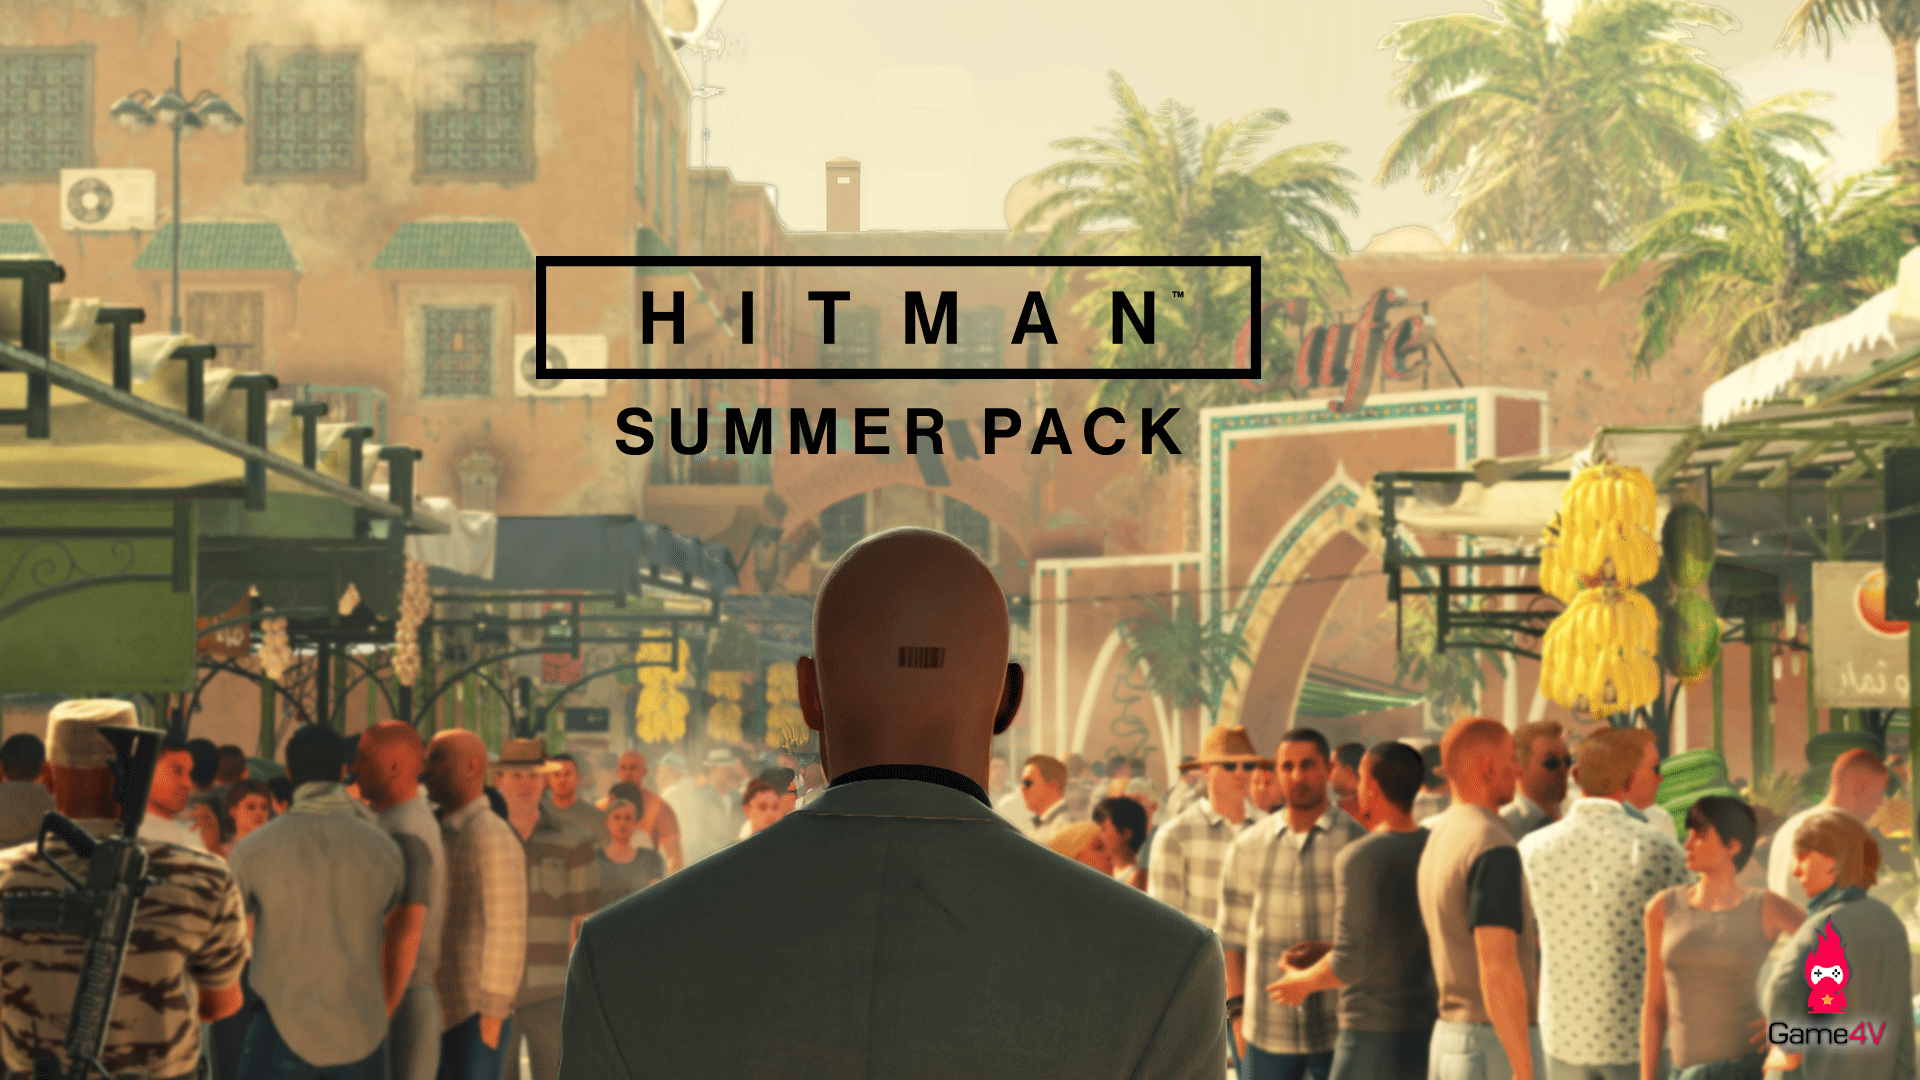 Hitman – Summer Pack cho chơi miễn phí, tặng kèm Episode 3